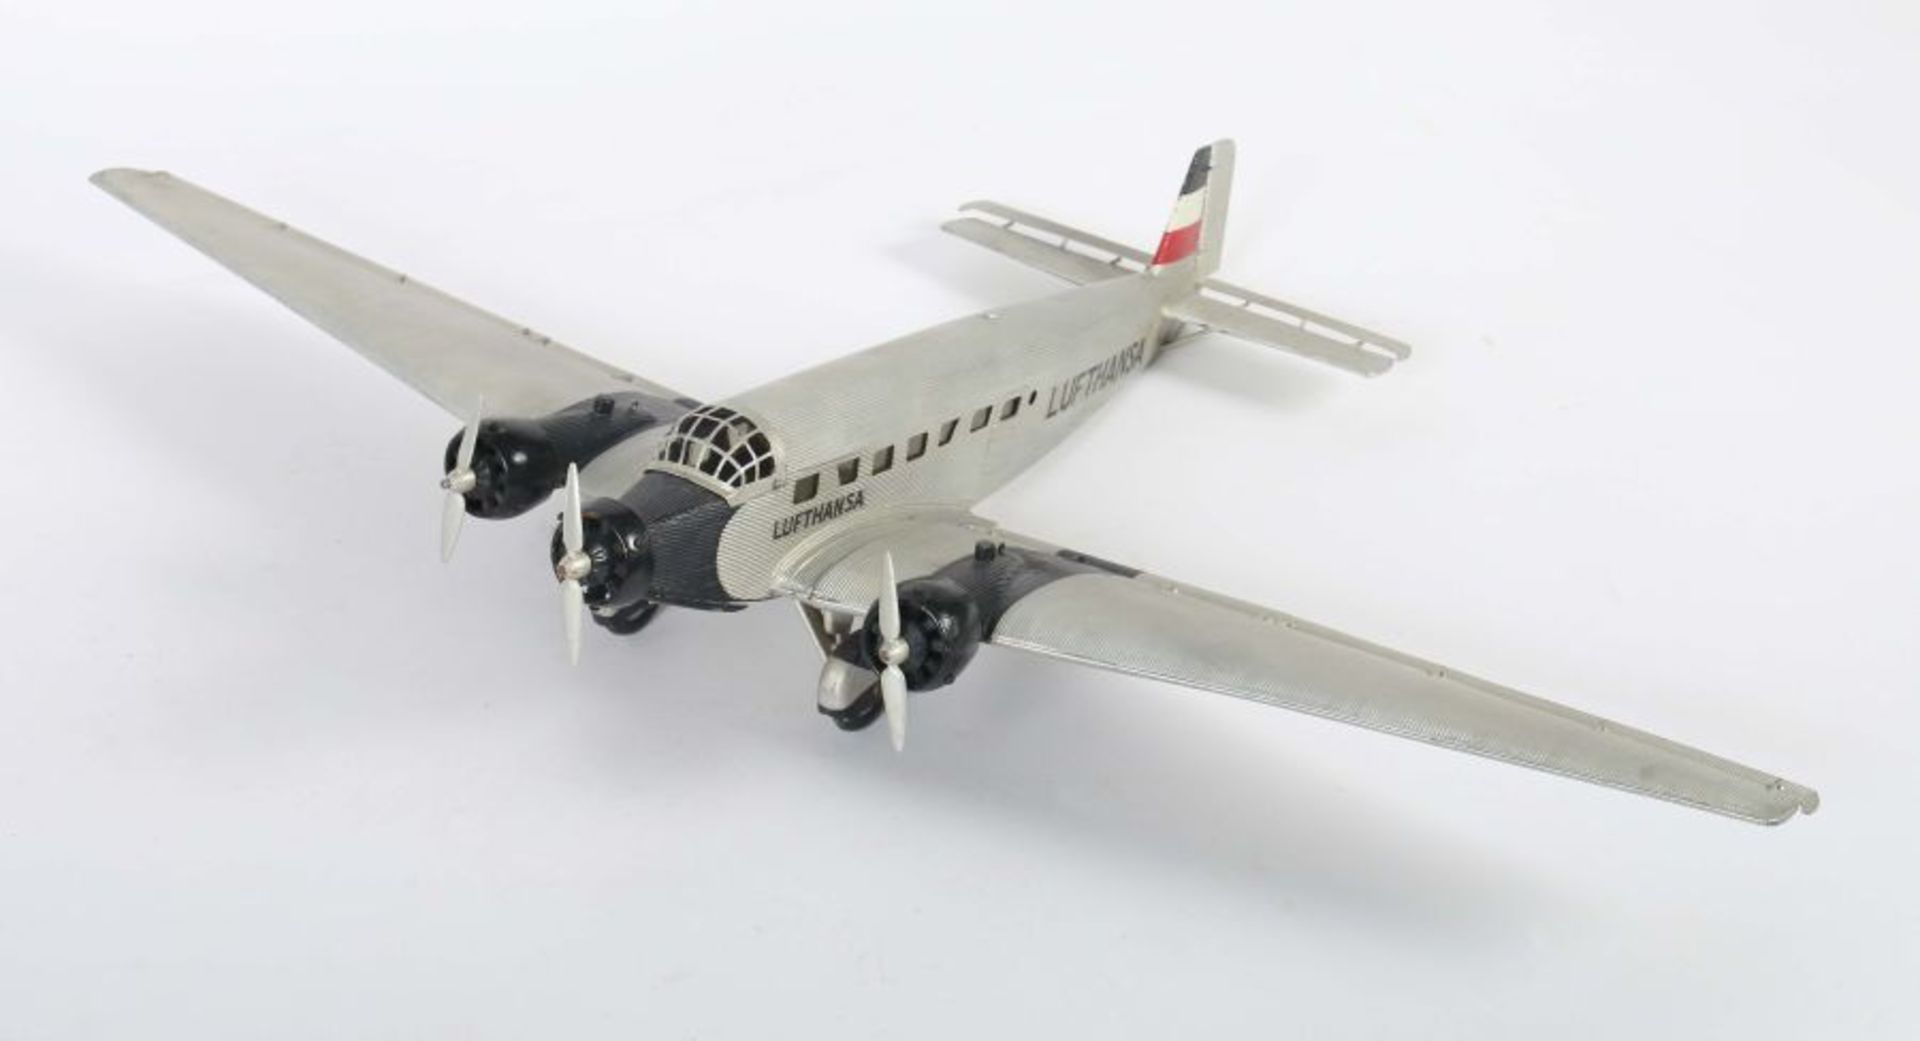 ModellflugzeugMärklin, Junkers "JU 52", histrorisches Reisebüromodell, 3-motorig, Wellblech, - Bild 6 aus 6